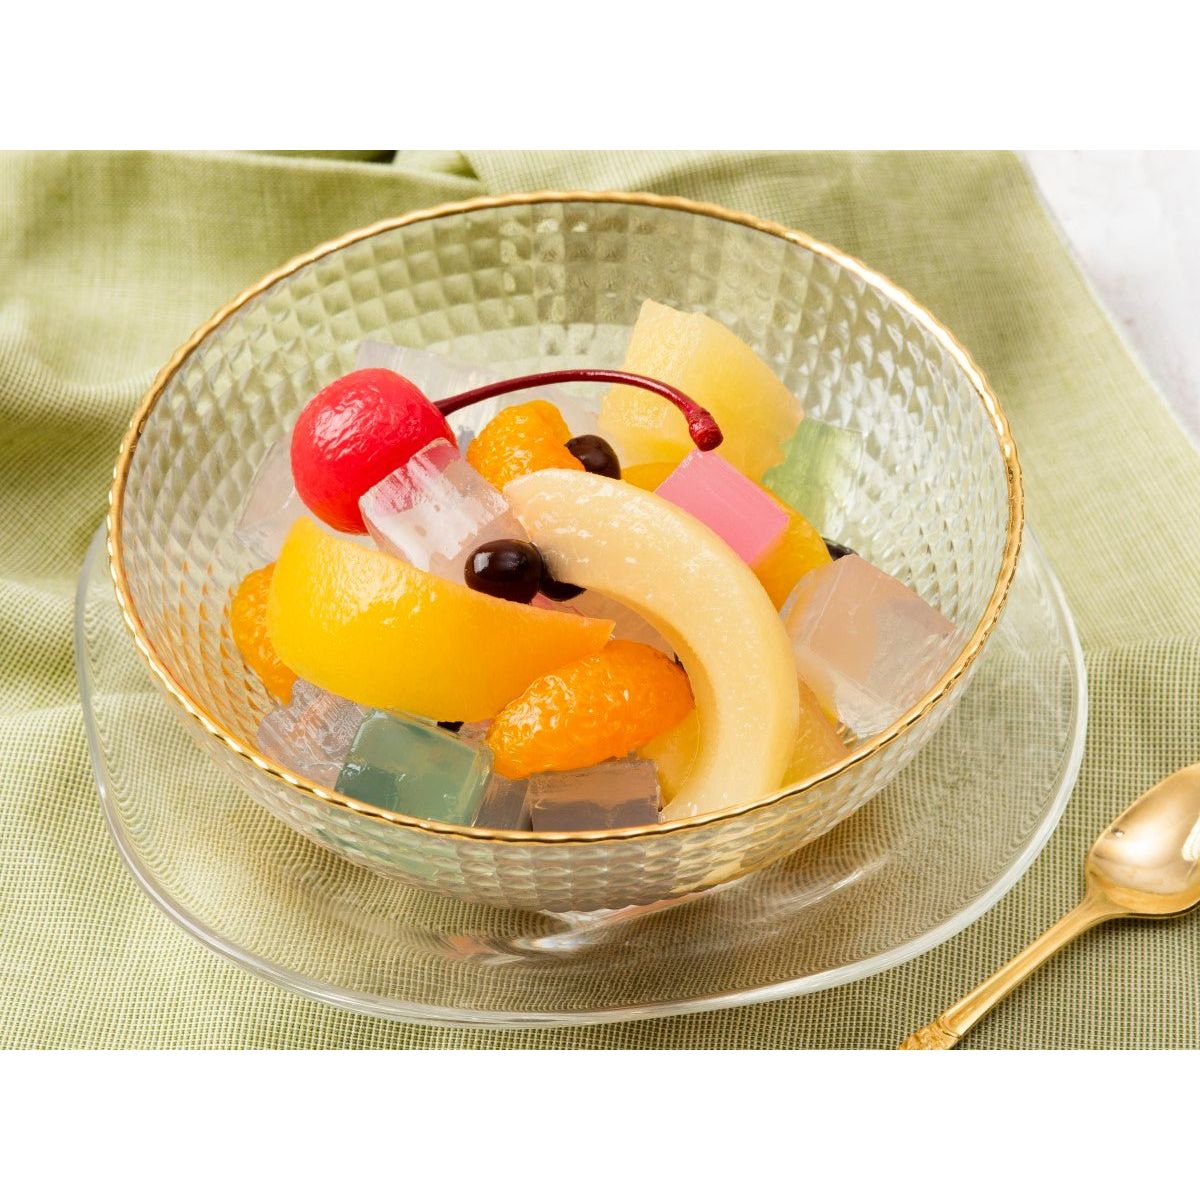 K & K Fruit Mitsu beans (5 kinds of fruit, agar, red pods)